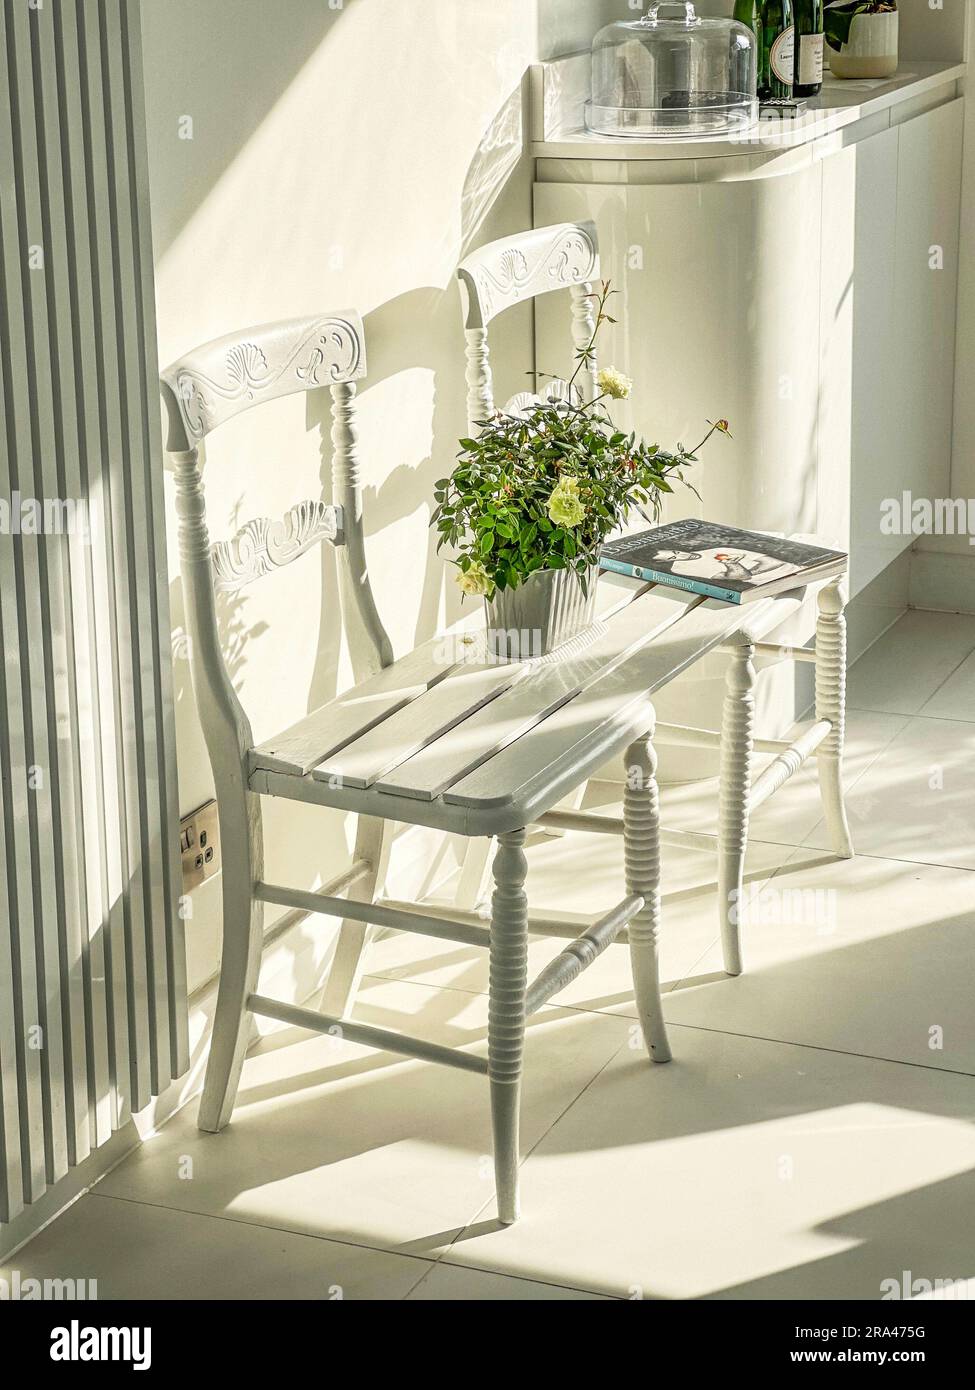 Une banquette réalisée en joignant deux chaises dans une cuisine moderne et contemporaine blanche. (Je n'ai aucune autorisation pour le livre dans l'image) Banque D'Images